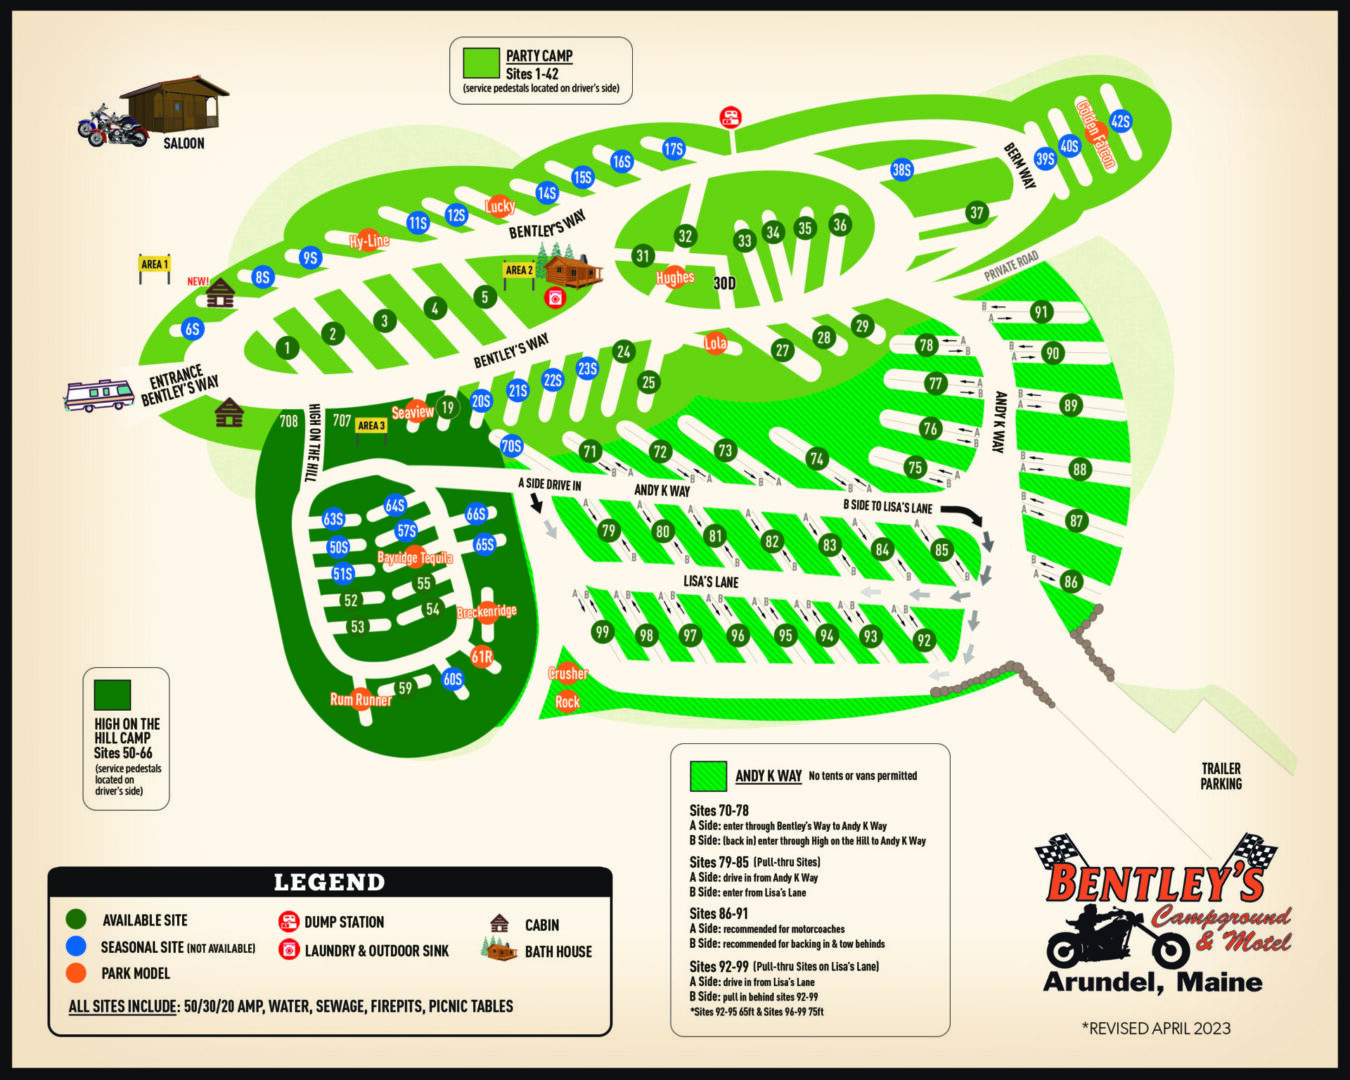 2023 Bentleys Campground Map_rev6_23 (1)